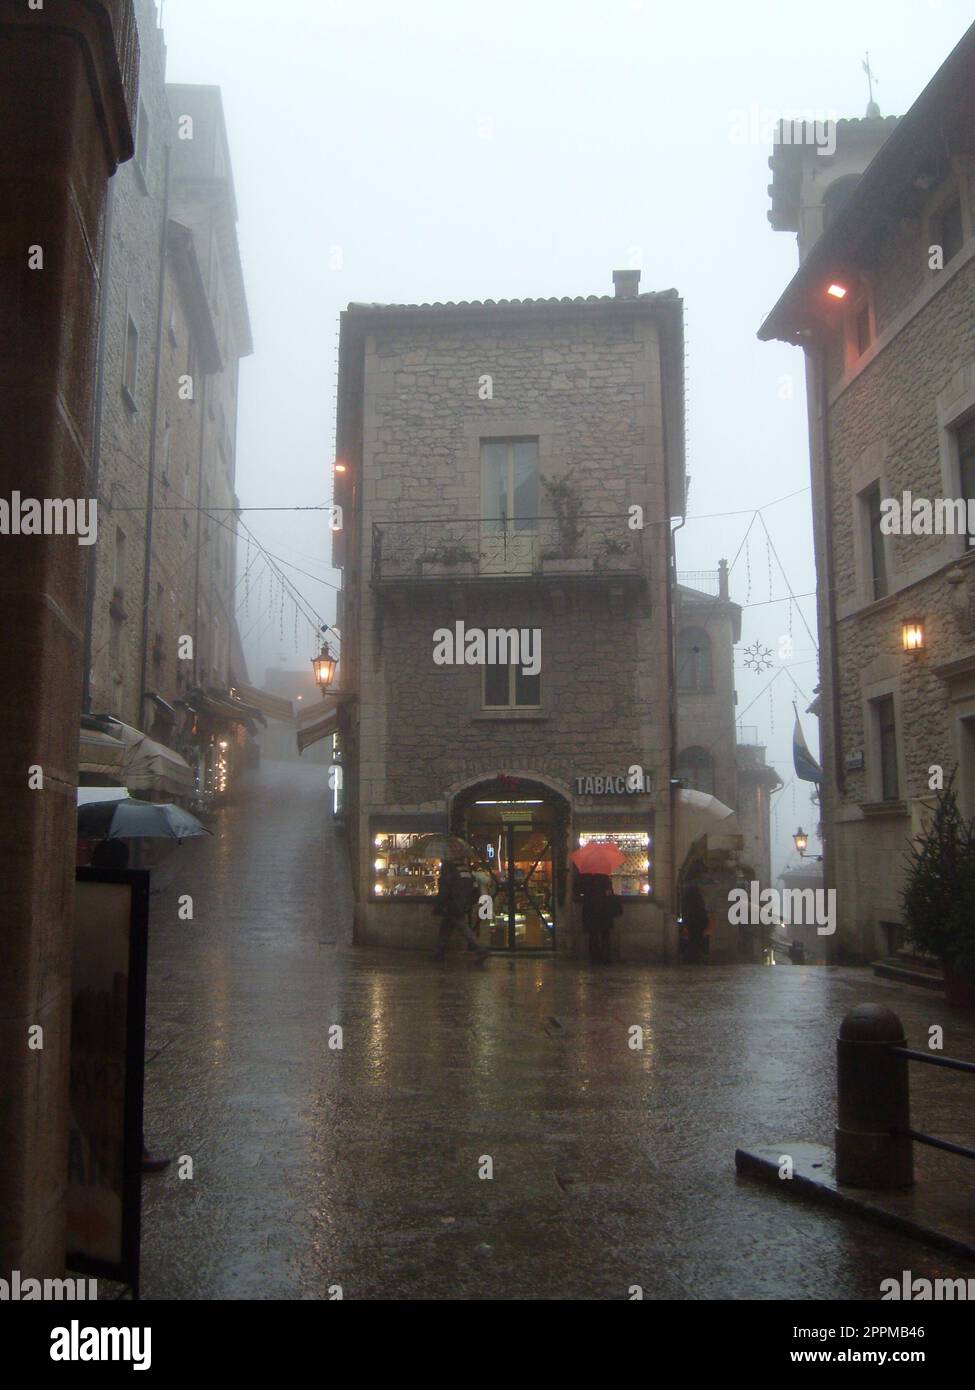 San Marino, 18. Januar 2020. Nebel in San Marino. Schlechte Sicht. Das historische Zentrum von San Marino, der zentrale Platz. Passanten unter Schirmen eilen nach Hause. Stockfoto